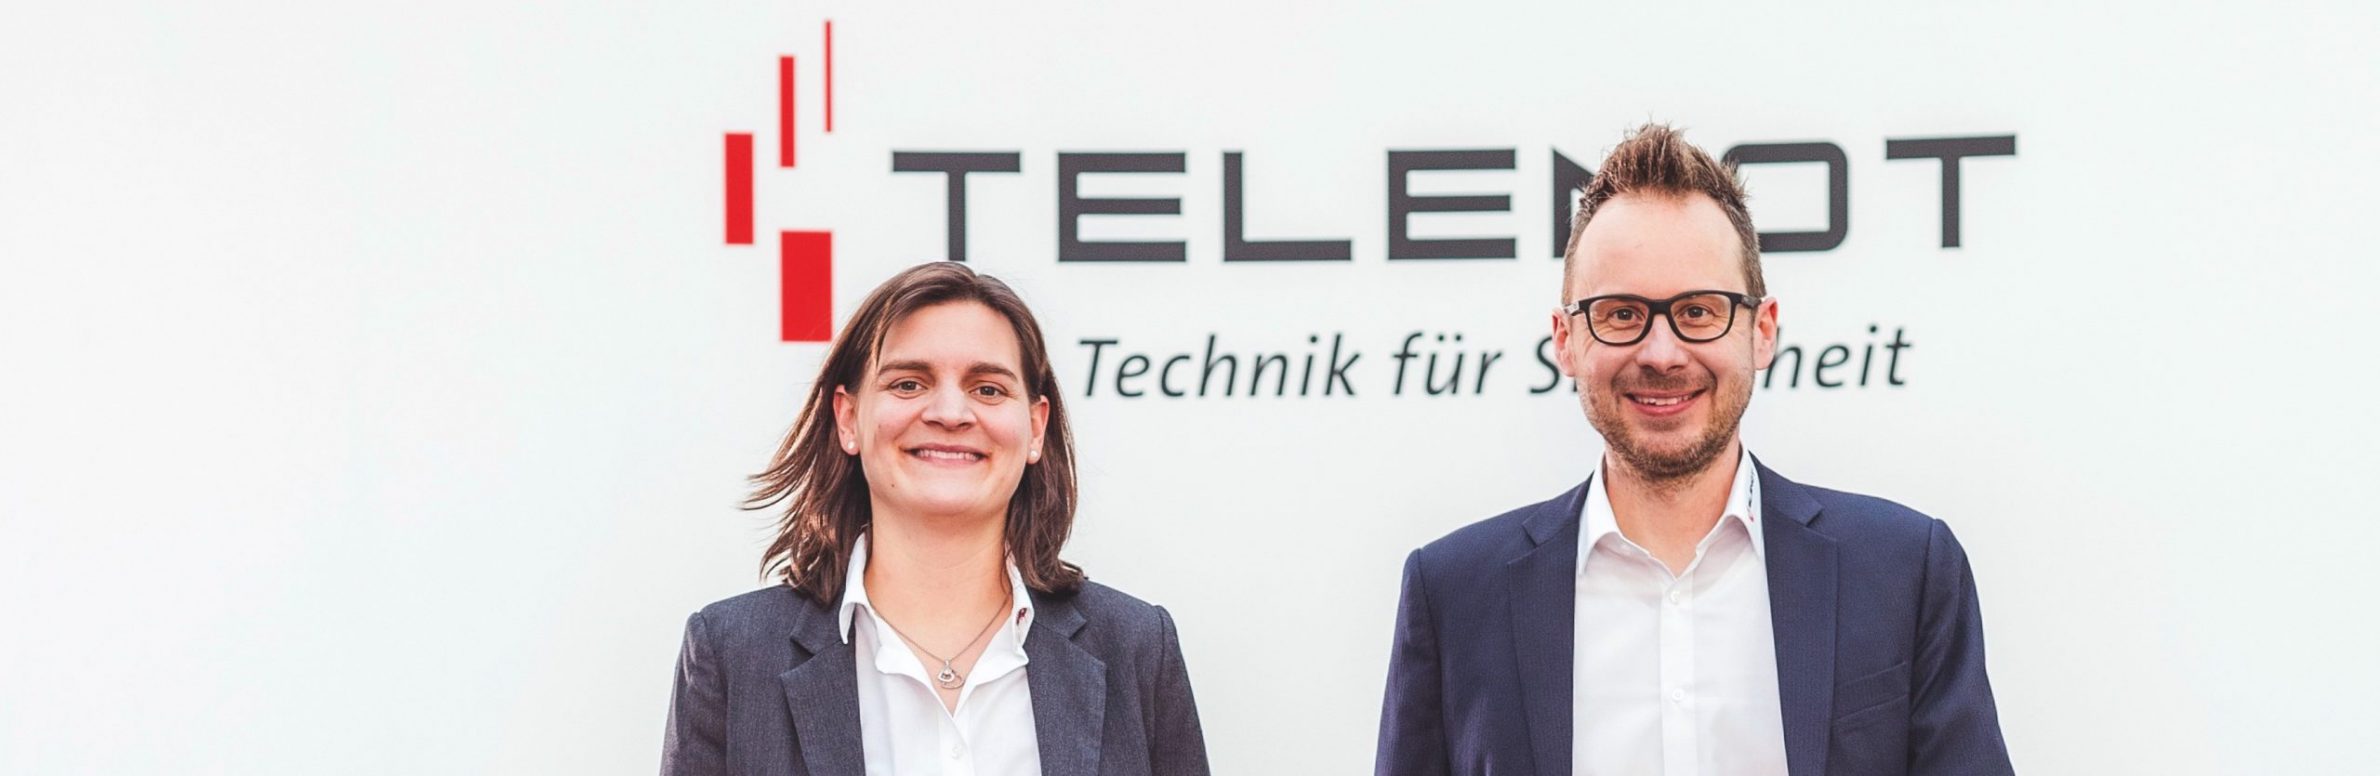 Telenot macht sich fit für die Zukunft | Medienservice für Journalisten